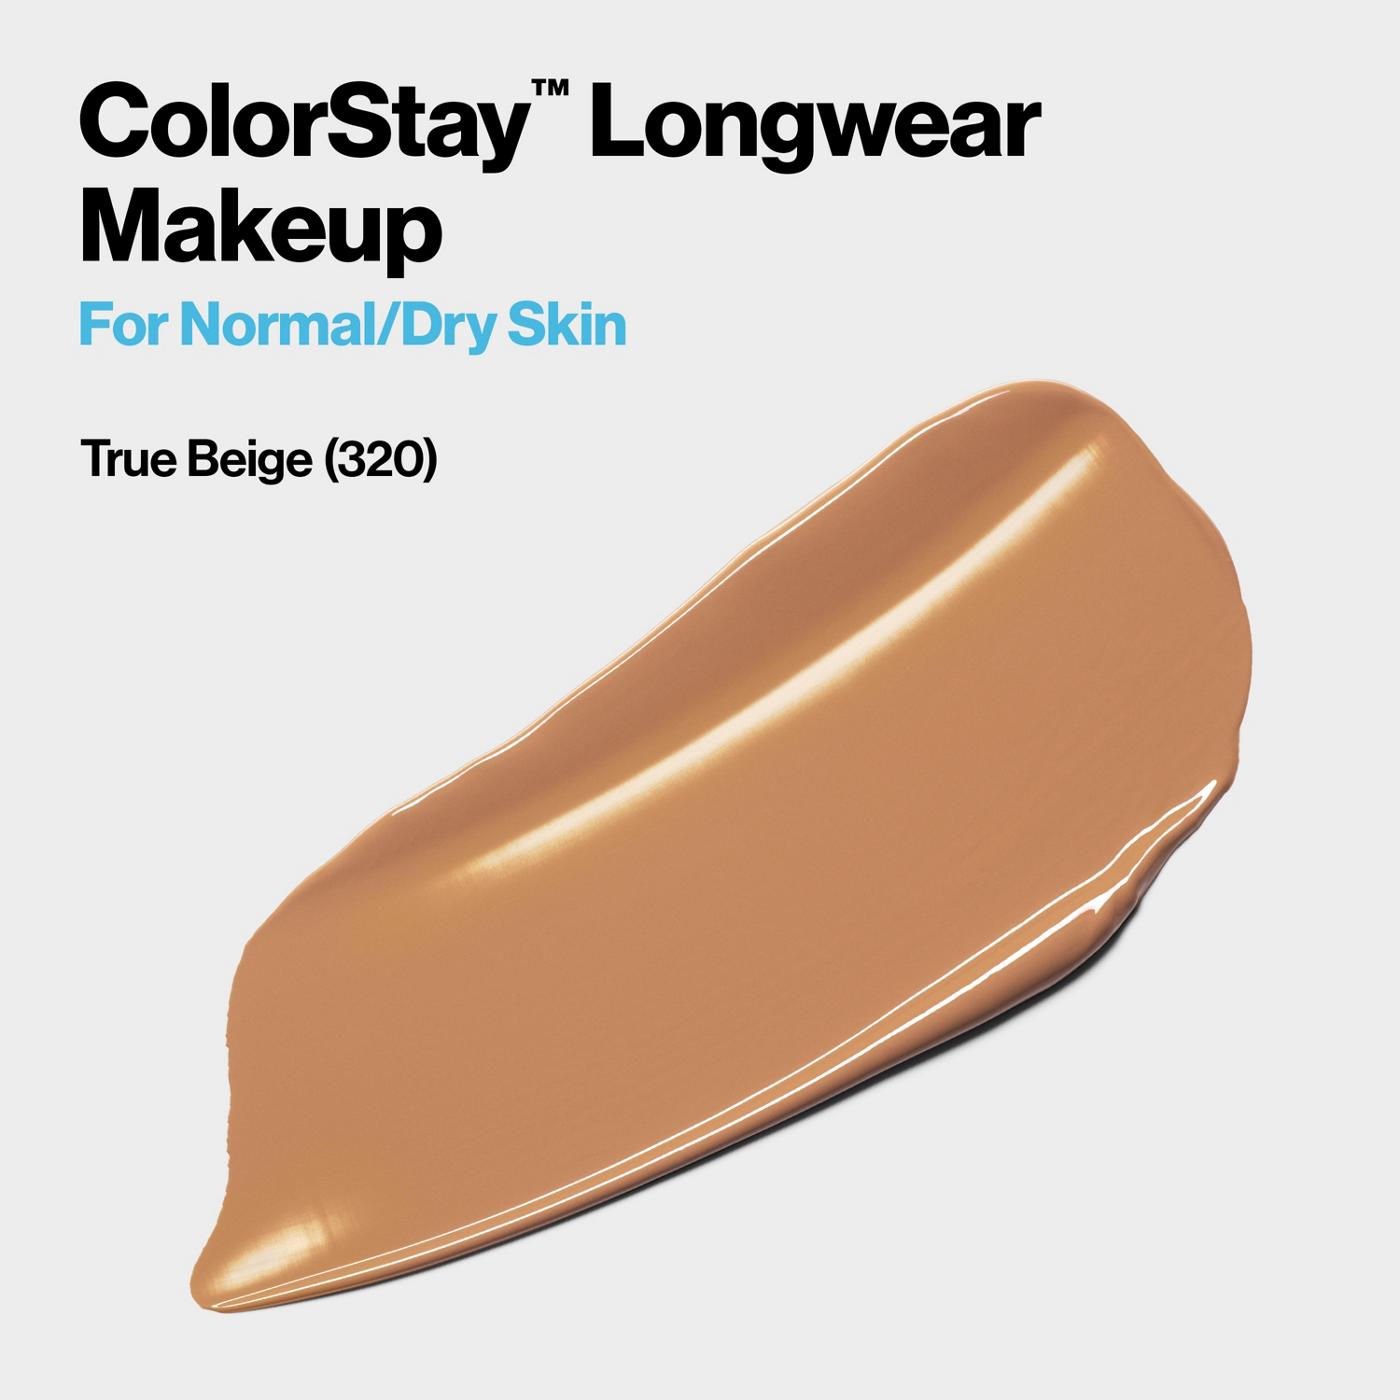 Revlon ColorStay Makeup for Normal/Dry Skin, 320 True Beige; image 4 of 6